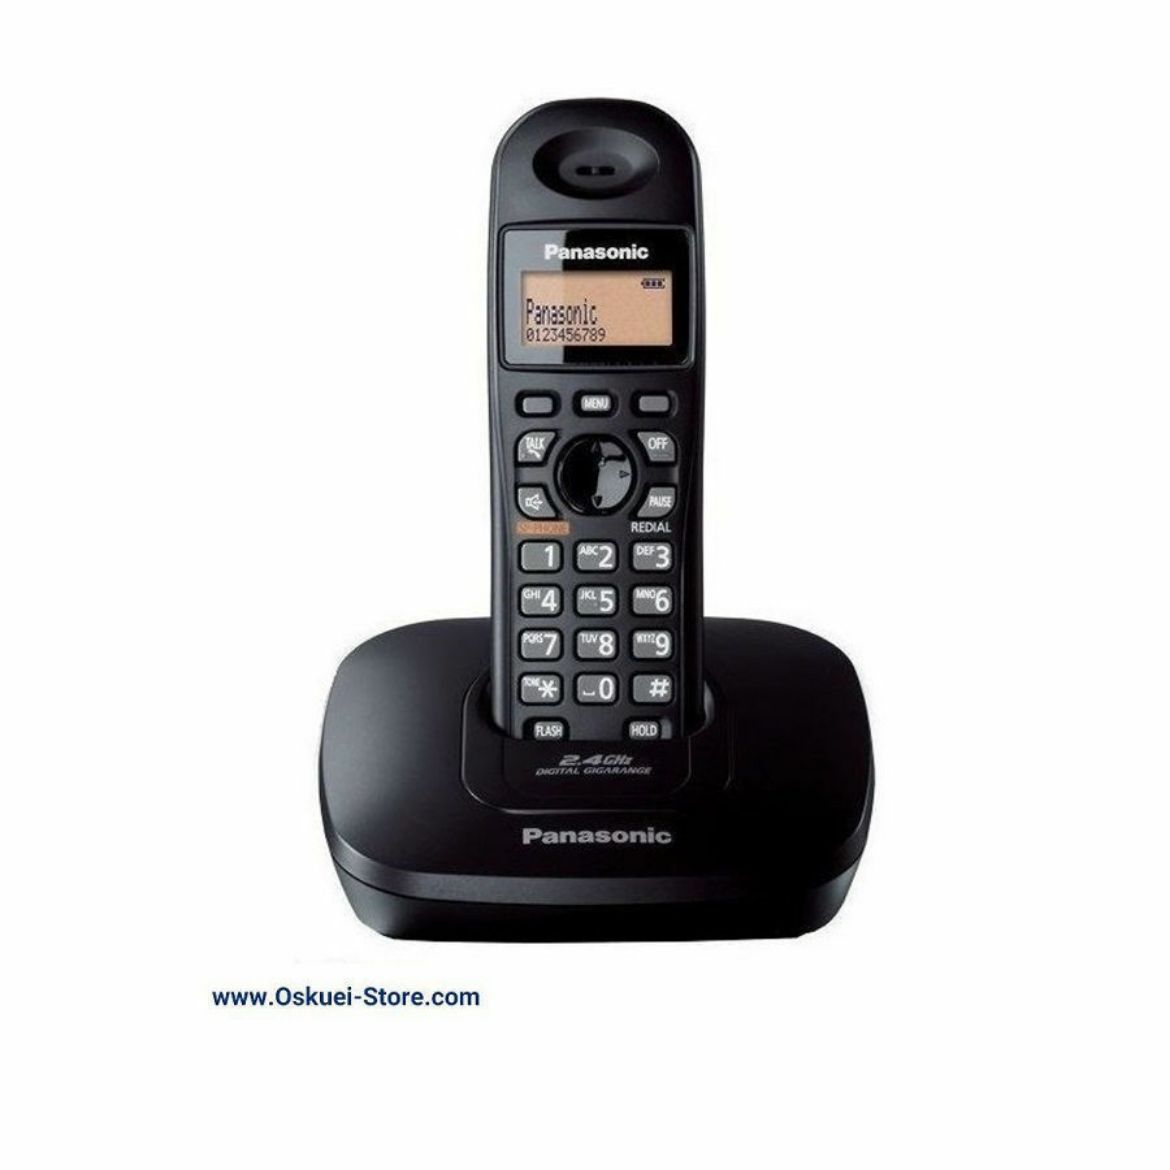 Panasonic KX-TG3611 Cordless Telephone Black